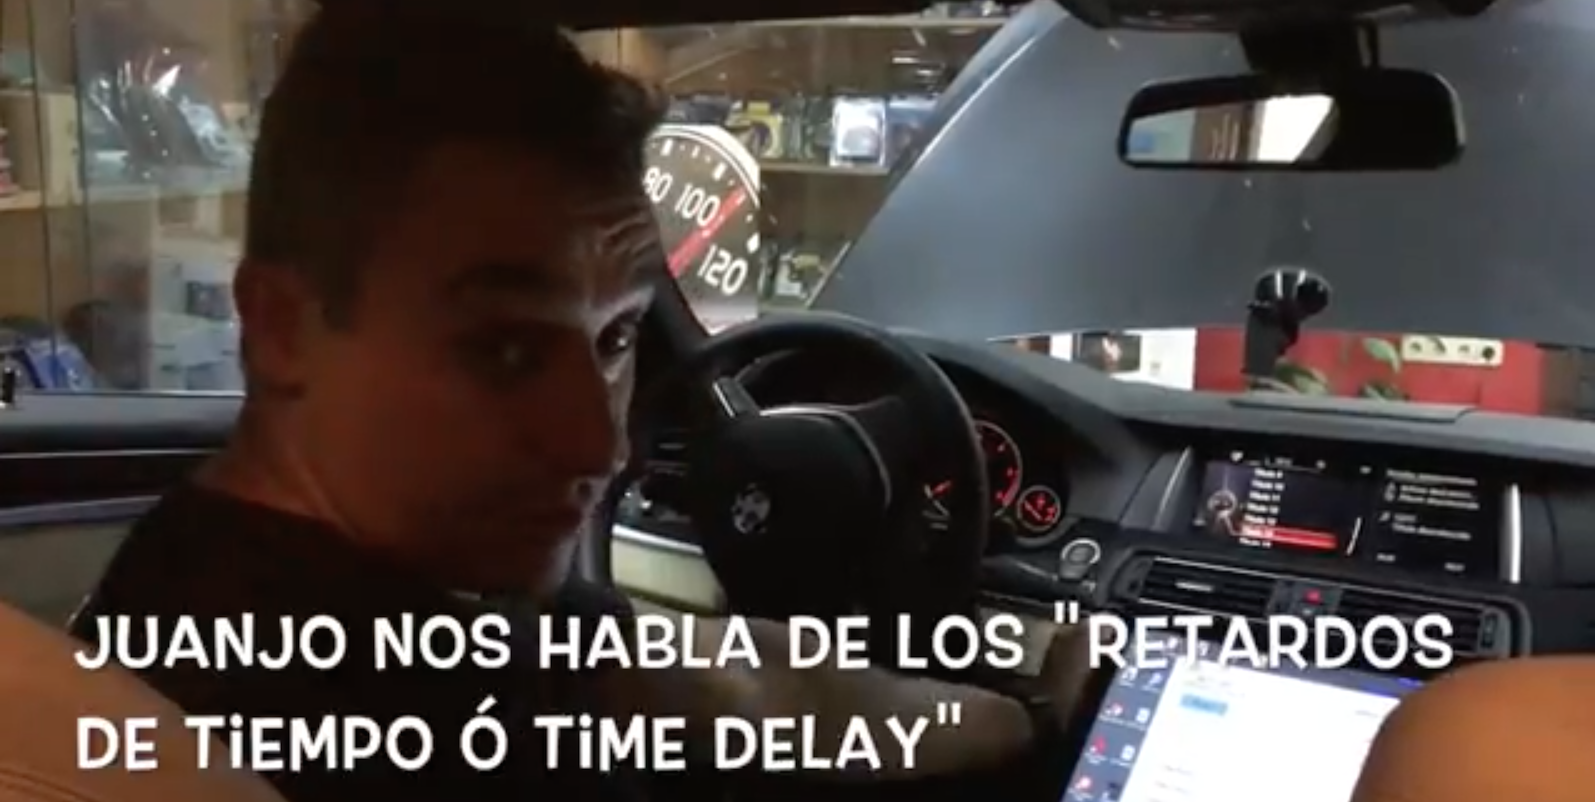 Juanjo nos habla de "Los Retardos de tiempo ó Time Delay"